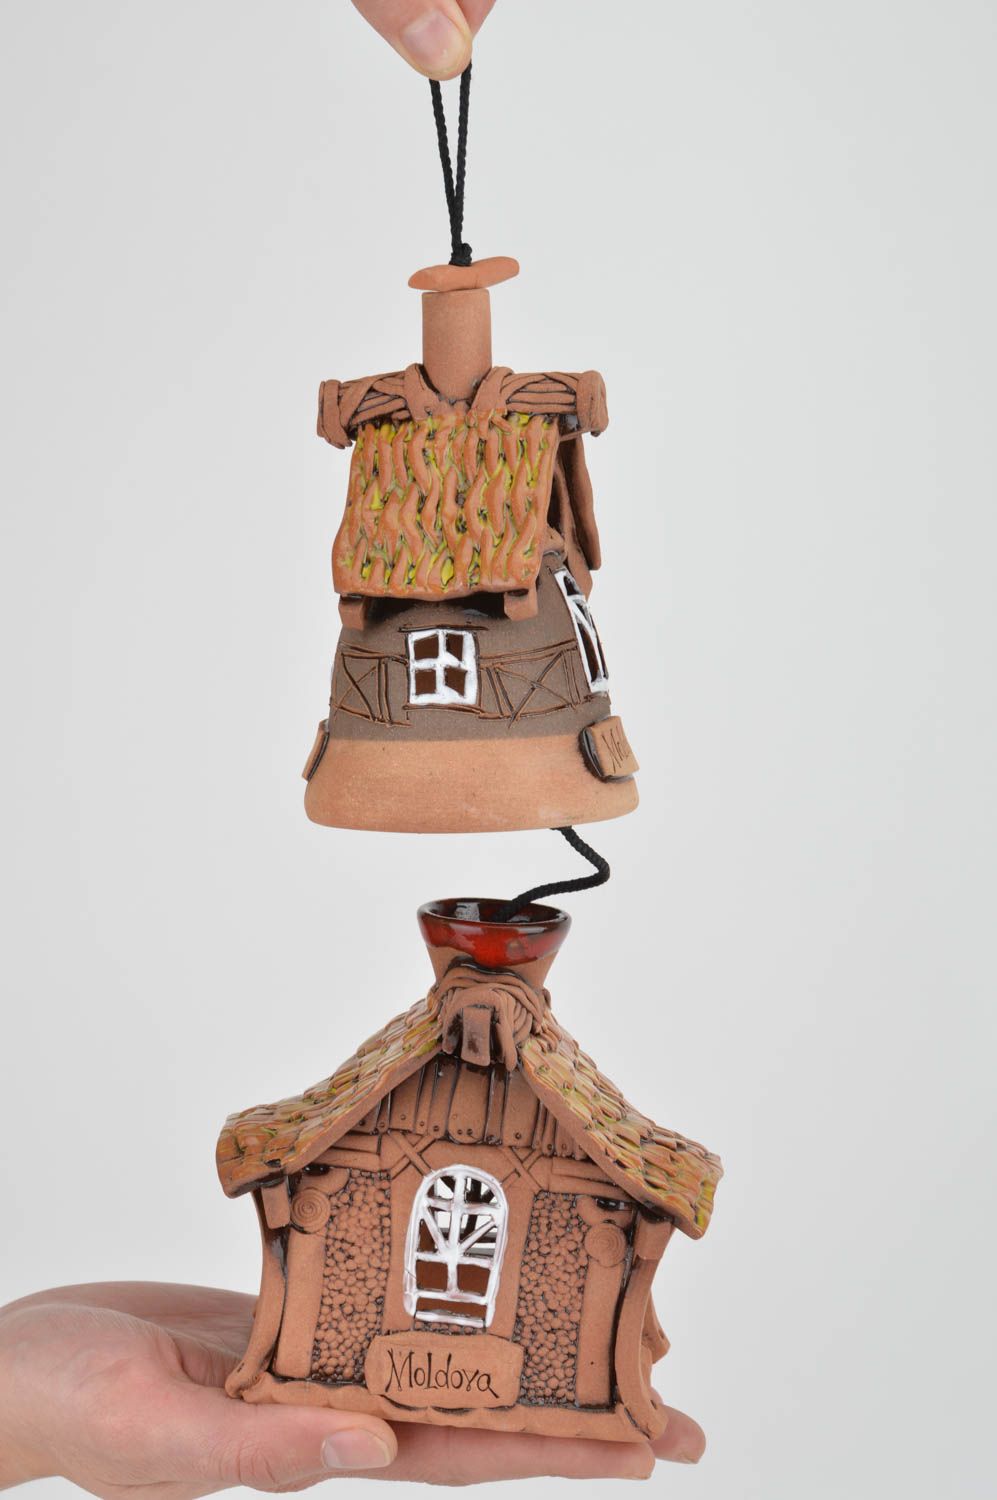 Аромалампа и колокольчик из глины набор ручной работы для декора дома фото 2